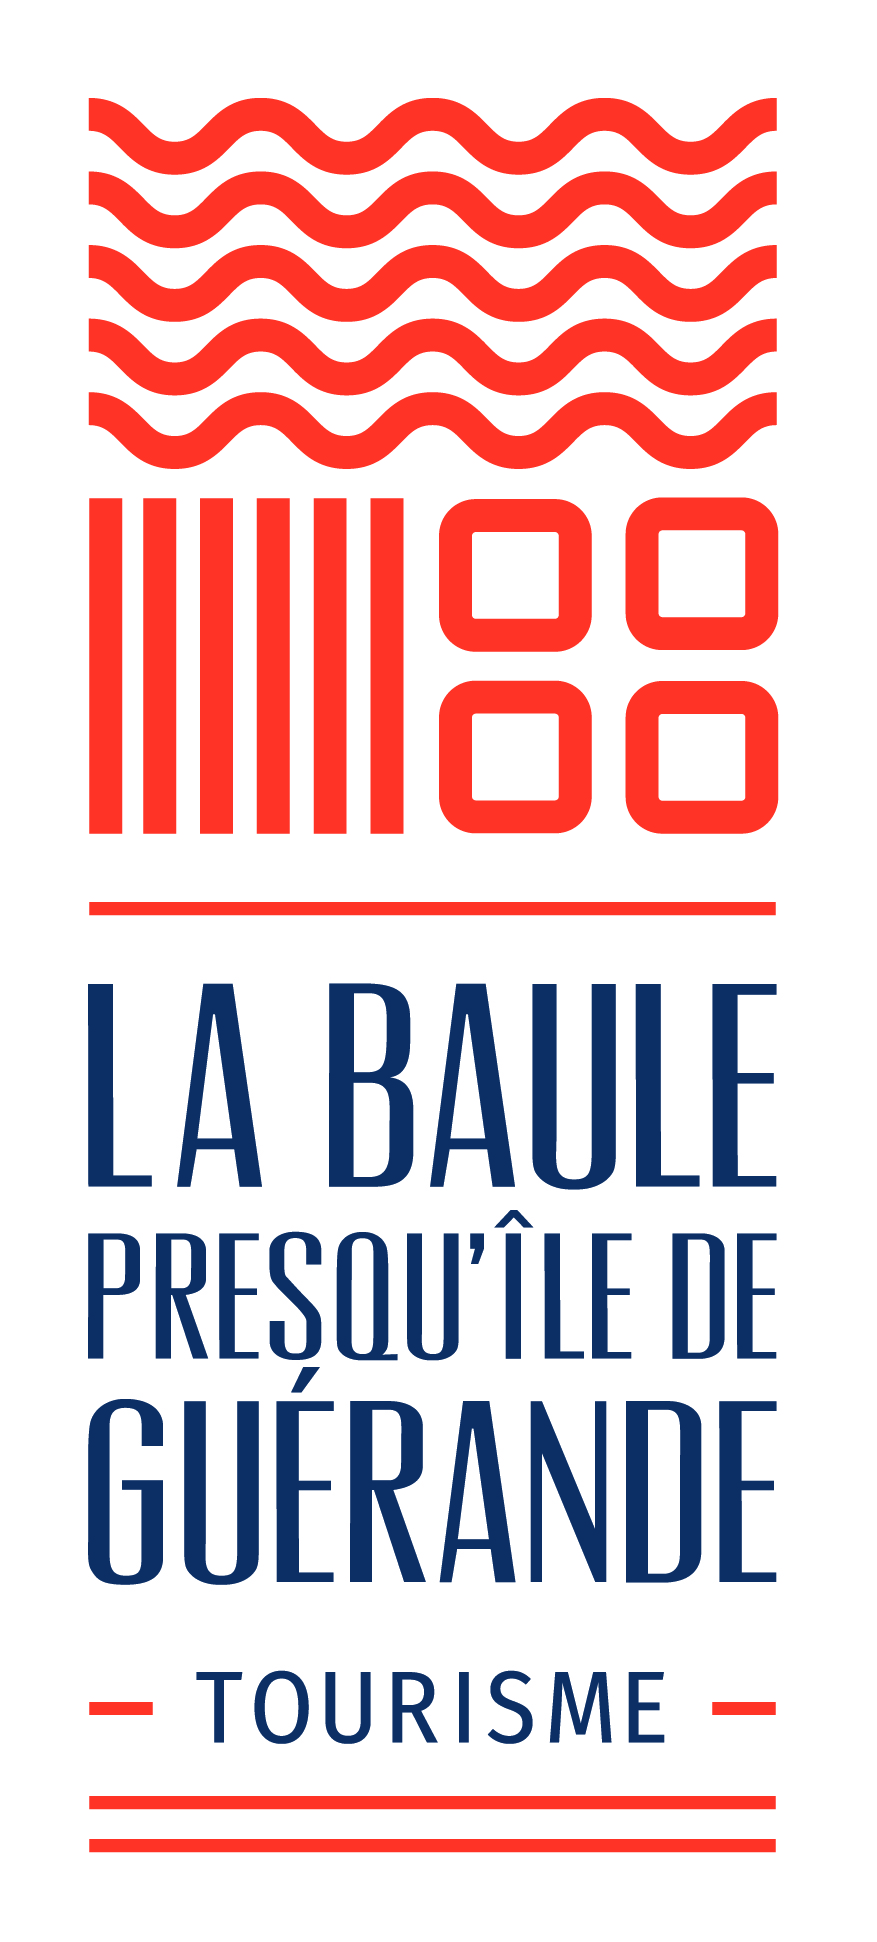 Office de tourisme La Baule Presqu'ile de Guérande